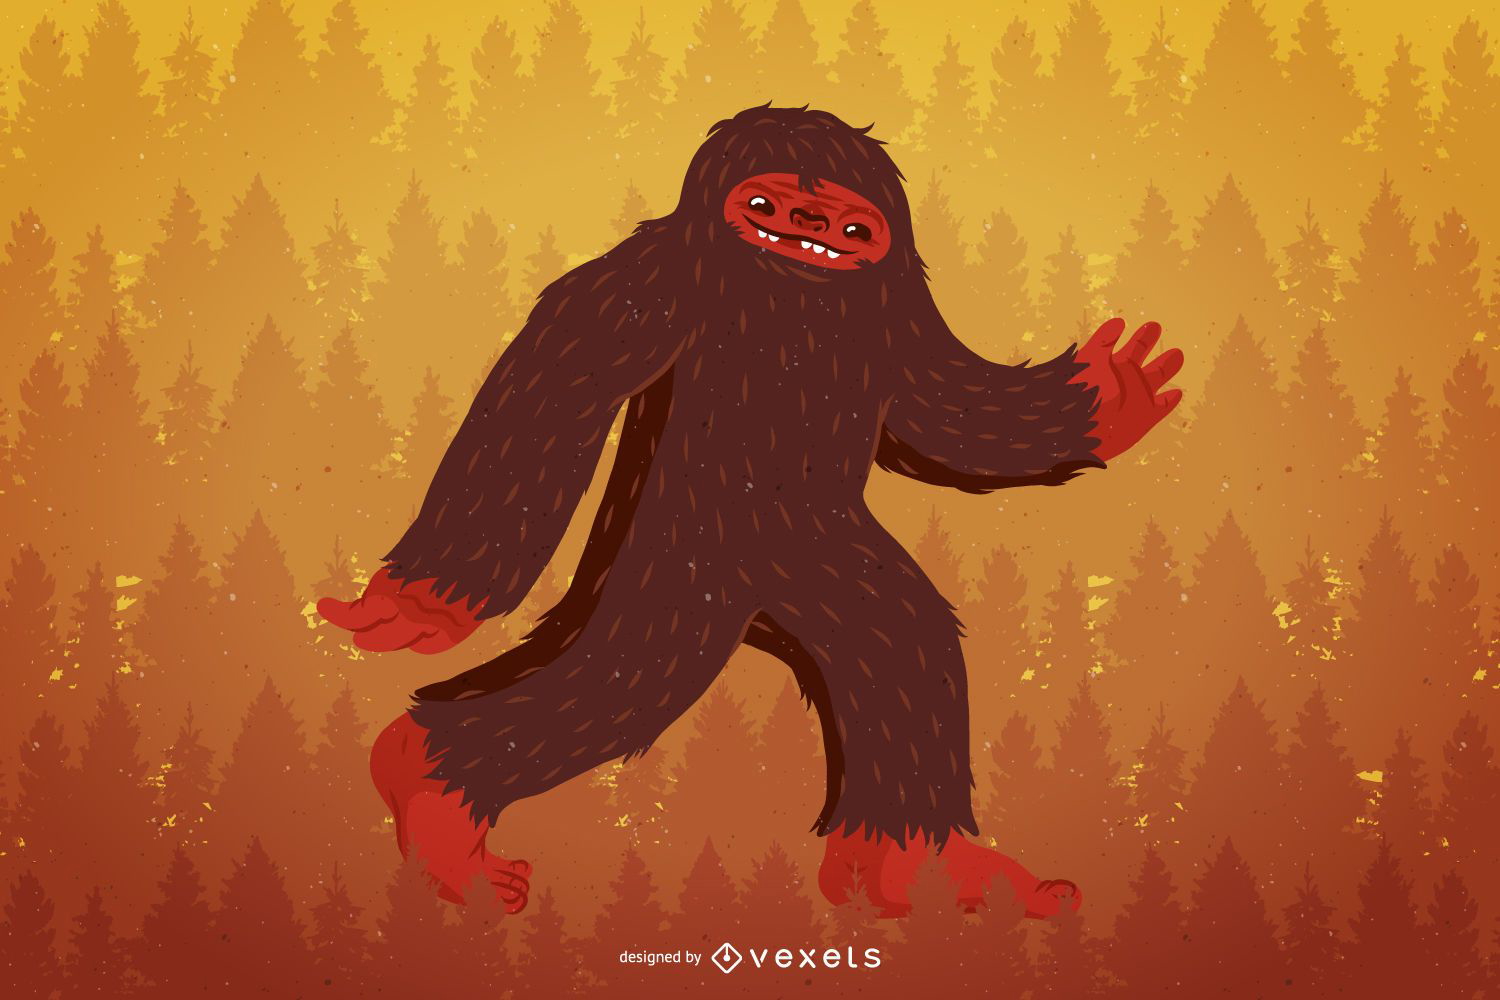 Ilustração do personagem Bigfoot